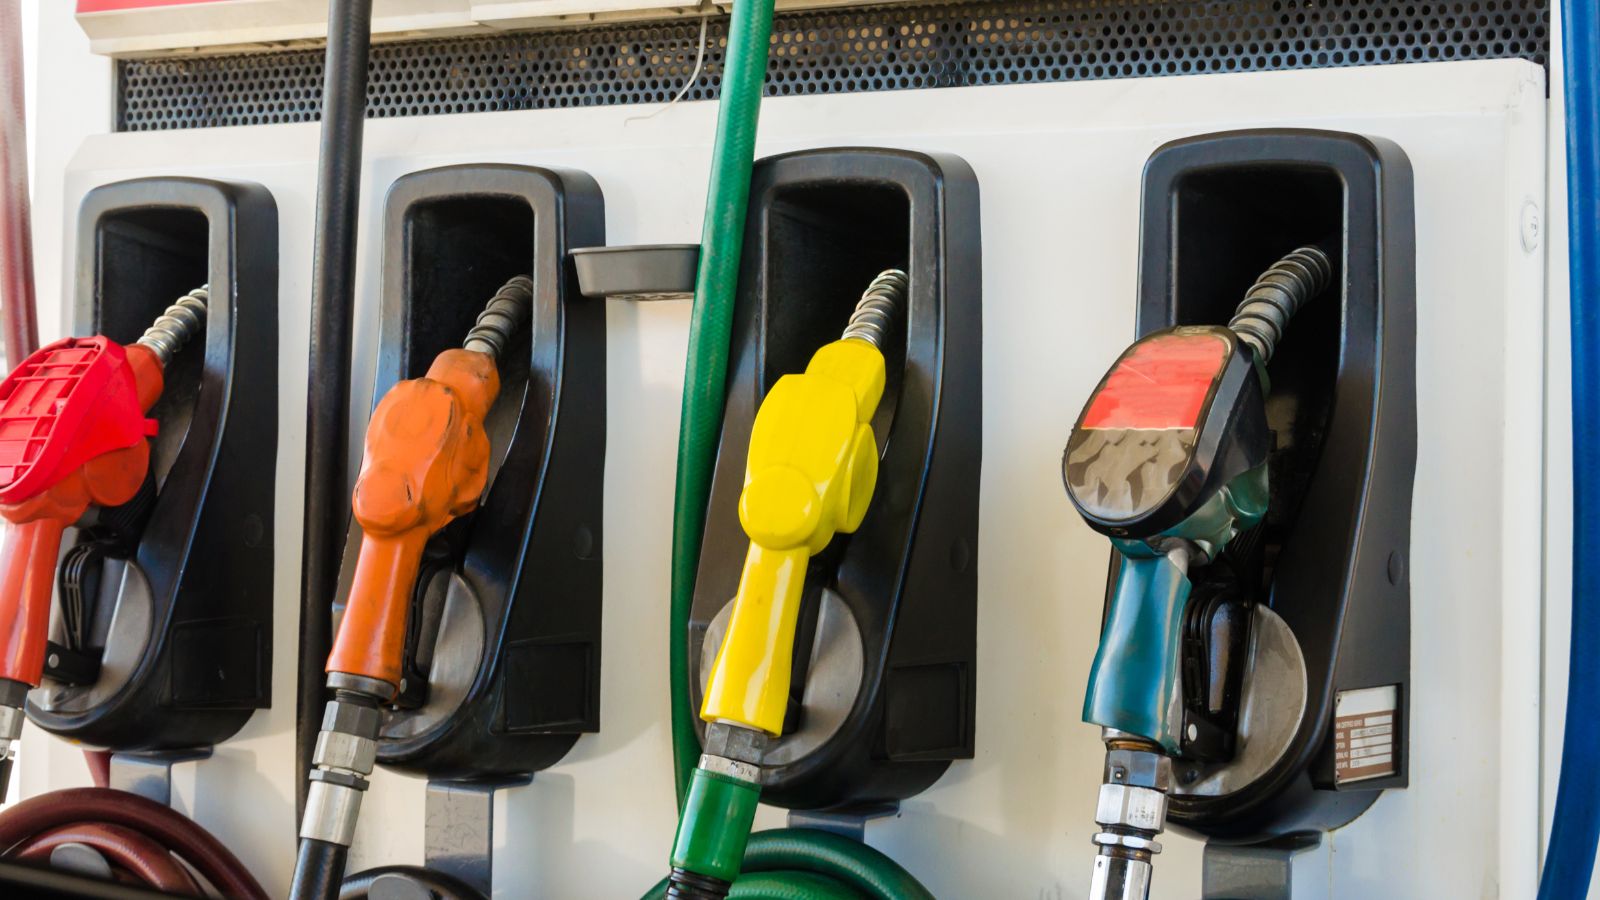 State Legislature approves bills preventing gas engine bans